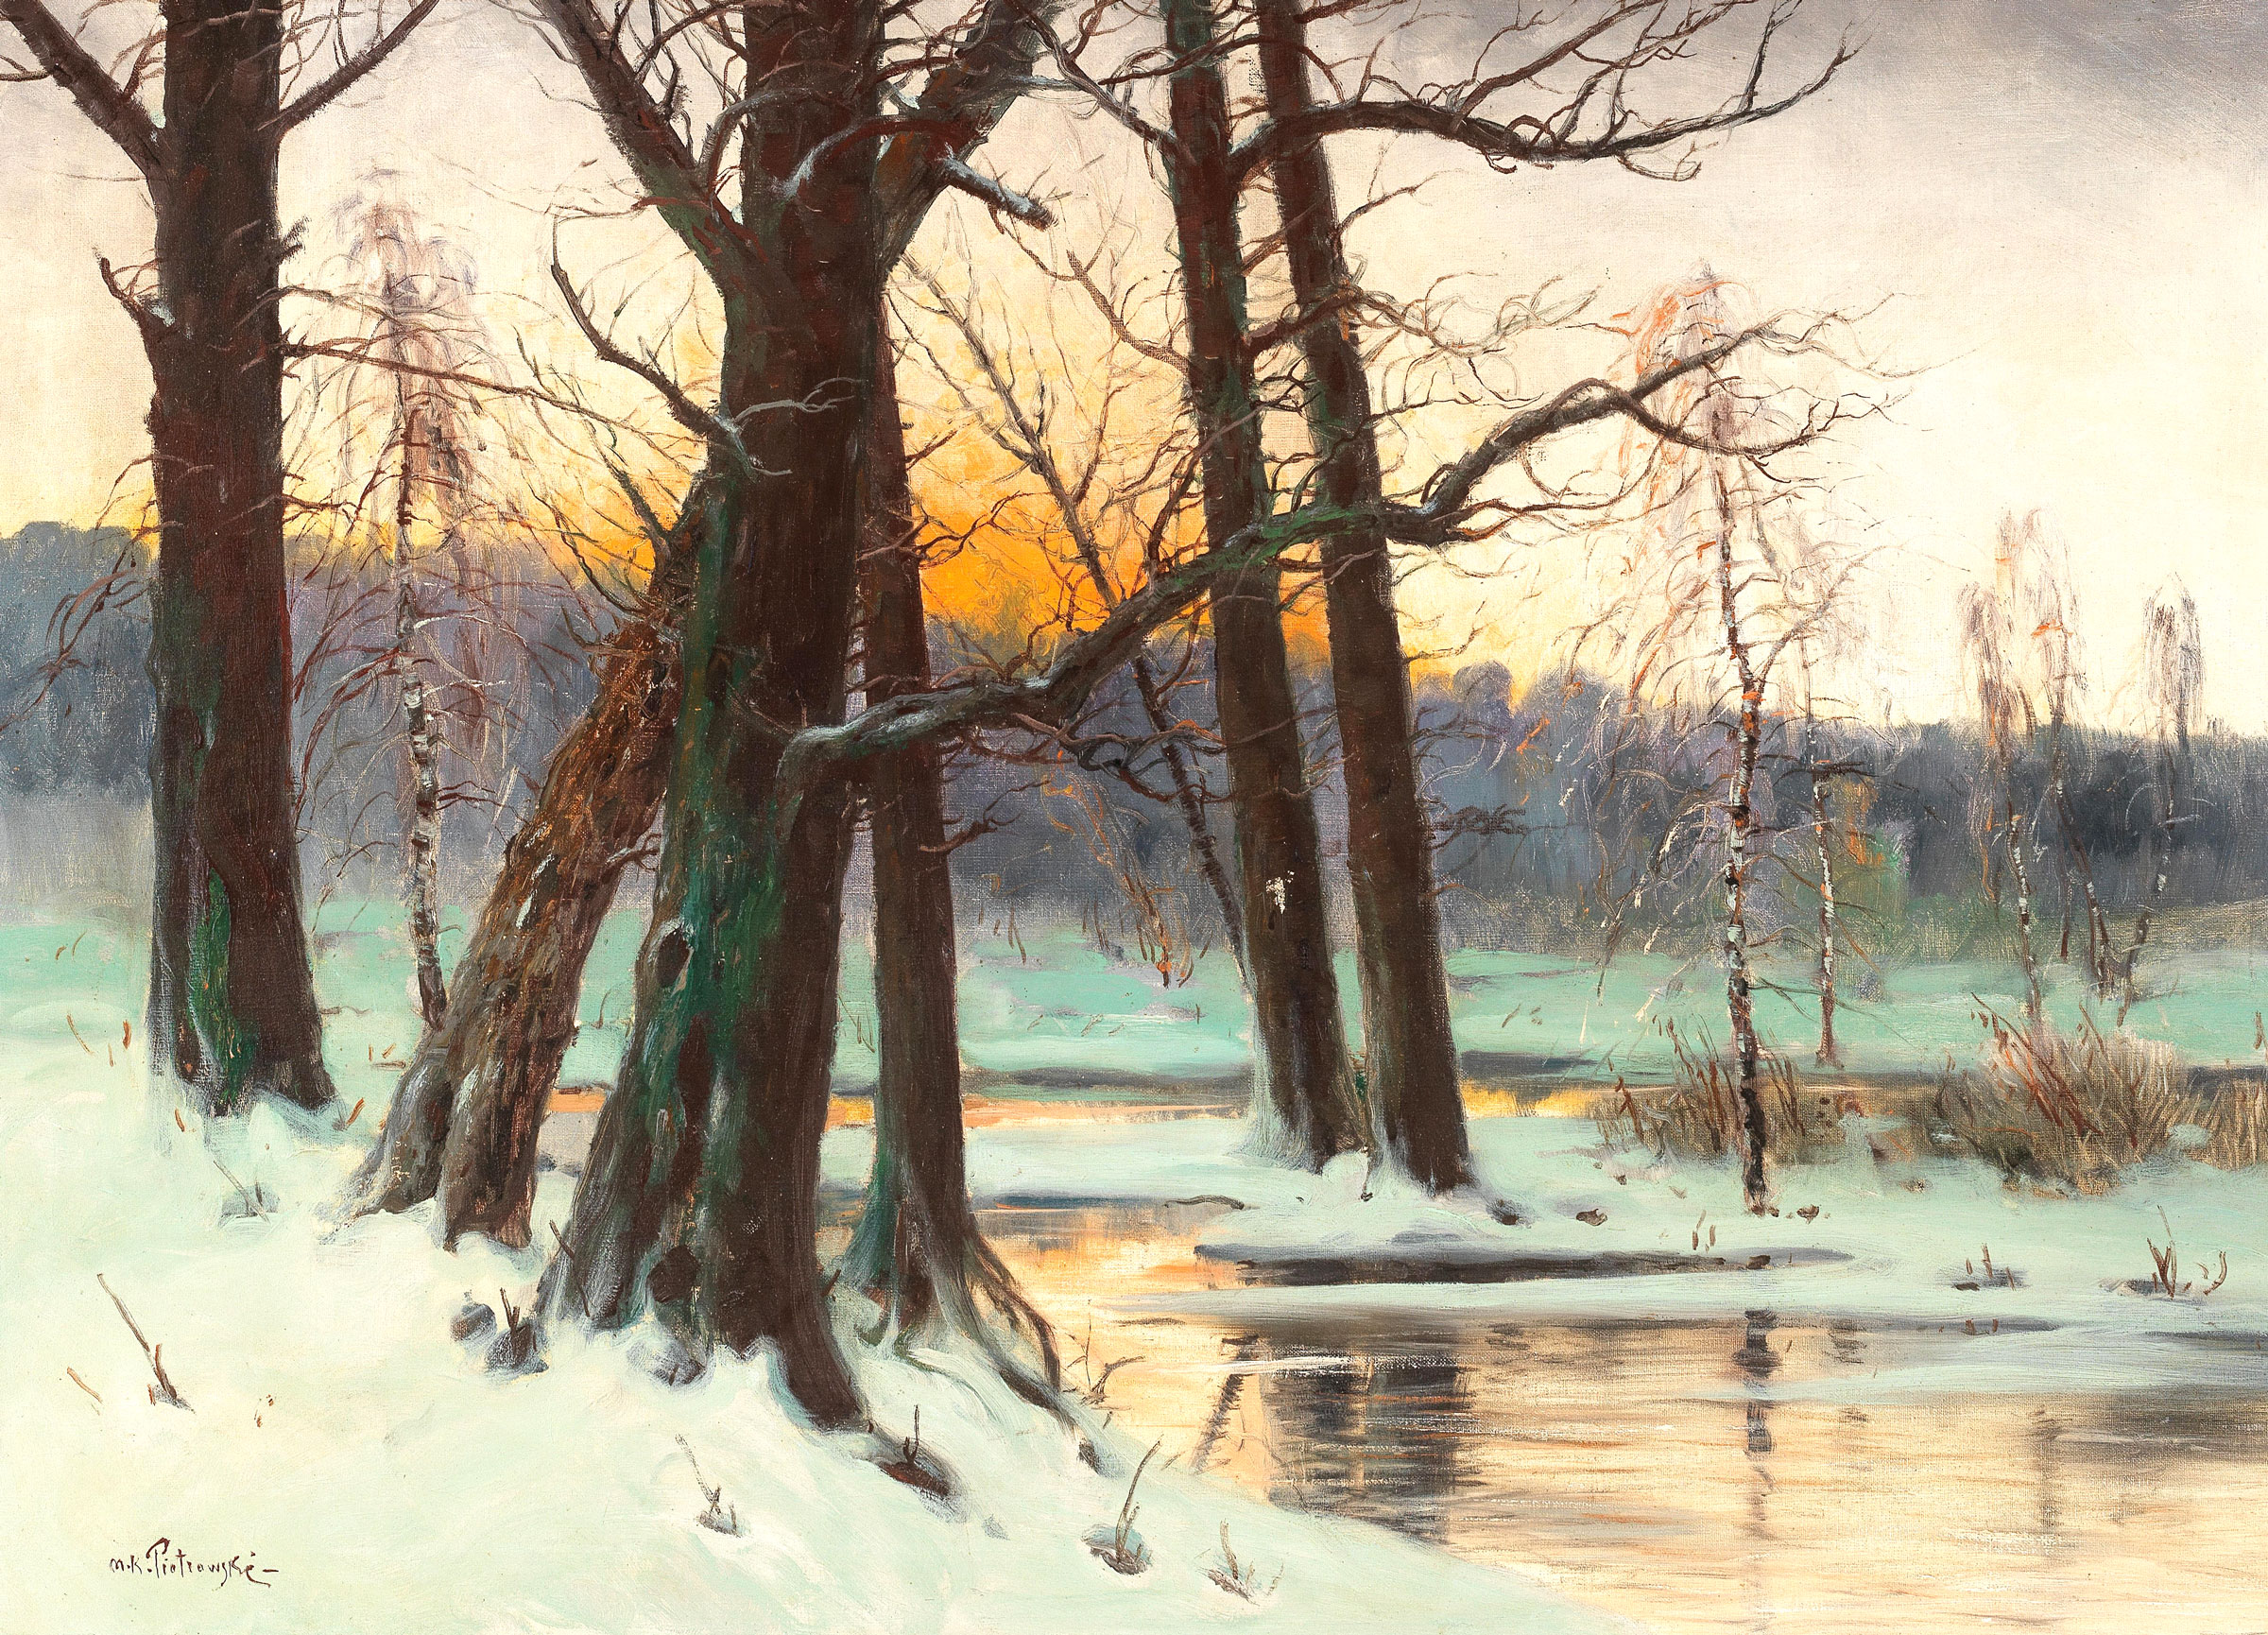 Mieczysław Korwin Piotrowski (1869-1930) „Zimowy zachód słońca”, źródło: Dorotheum